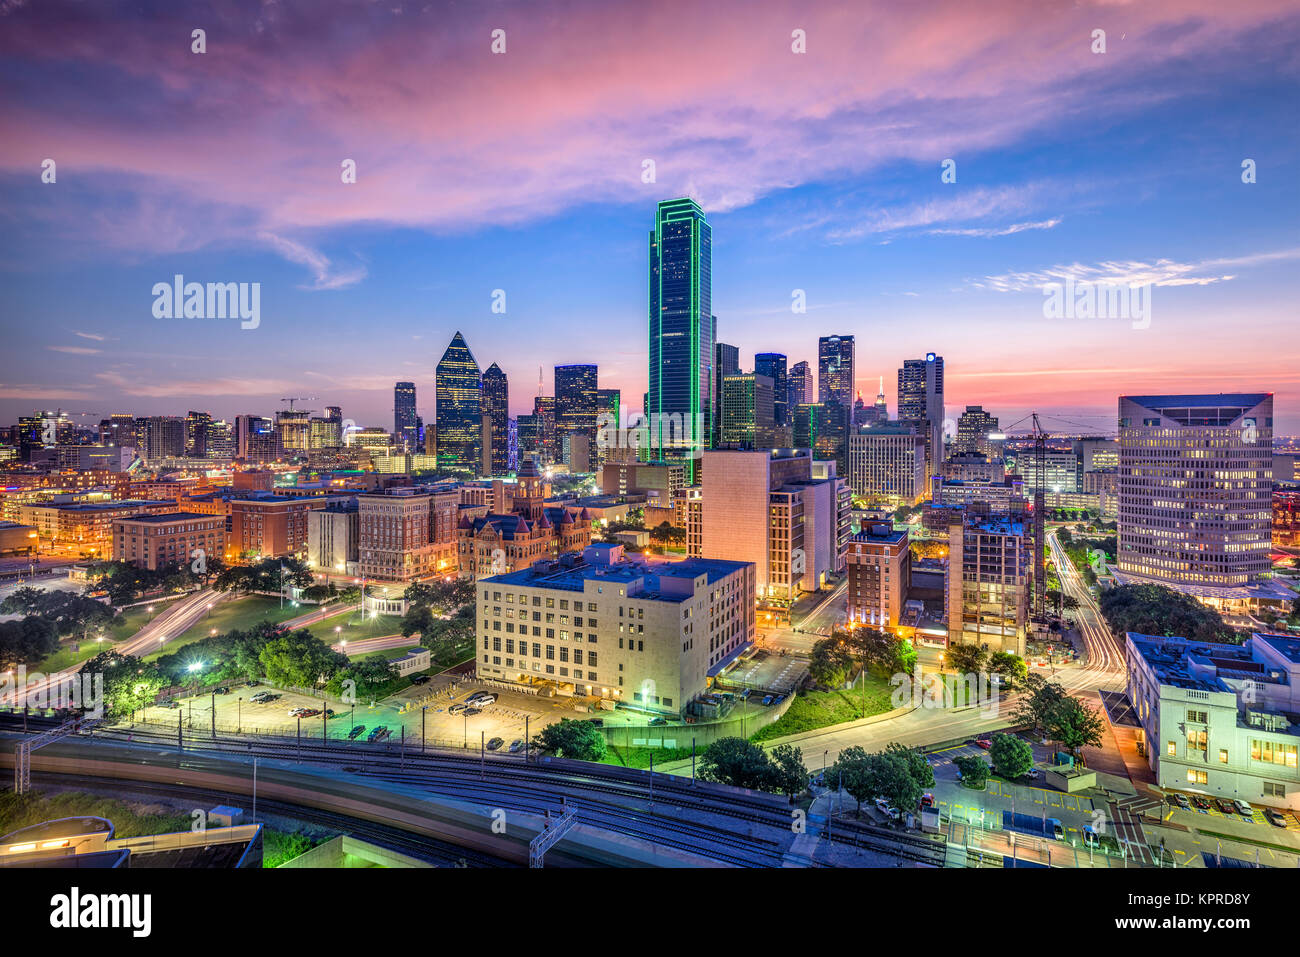 Dallas, Texas, USA downtown skyline. Stock Photo